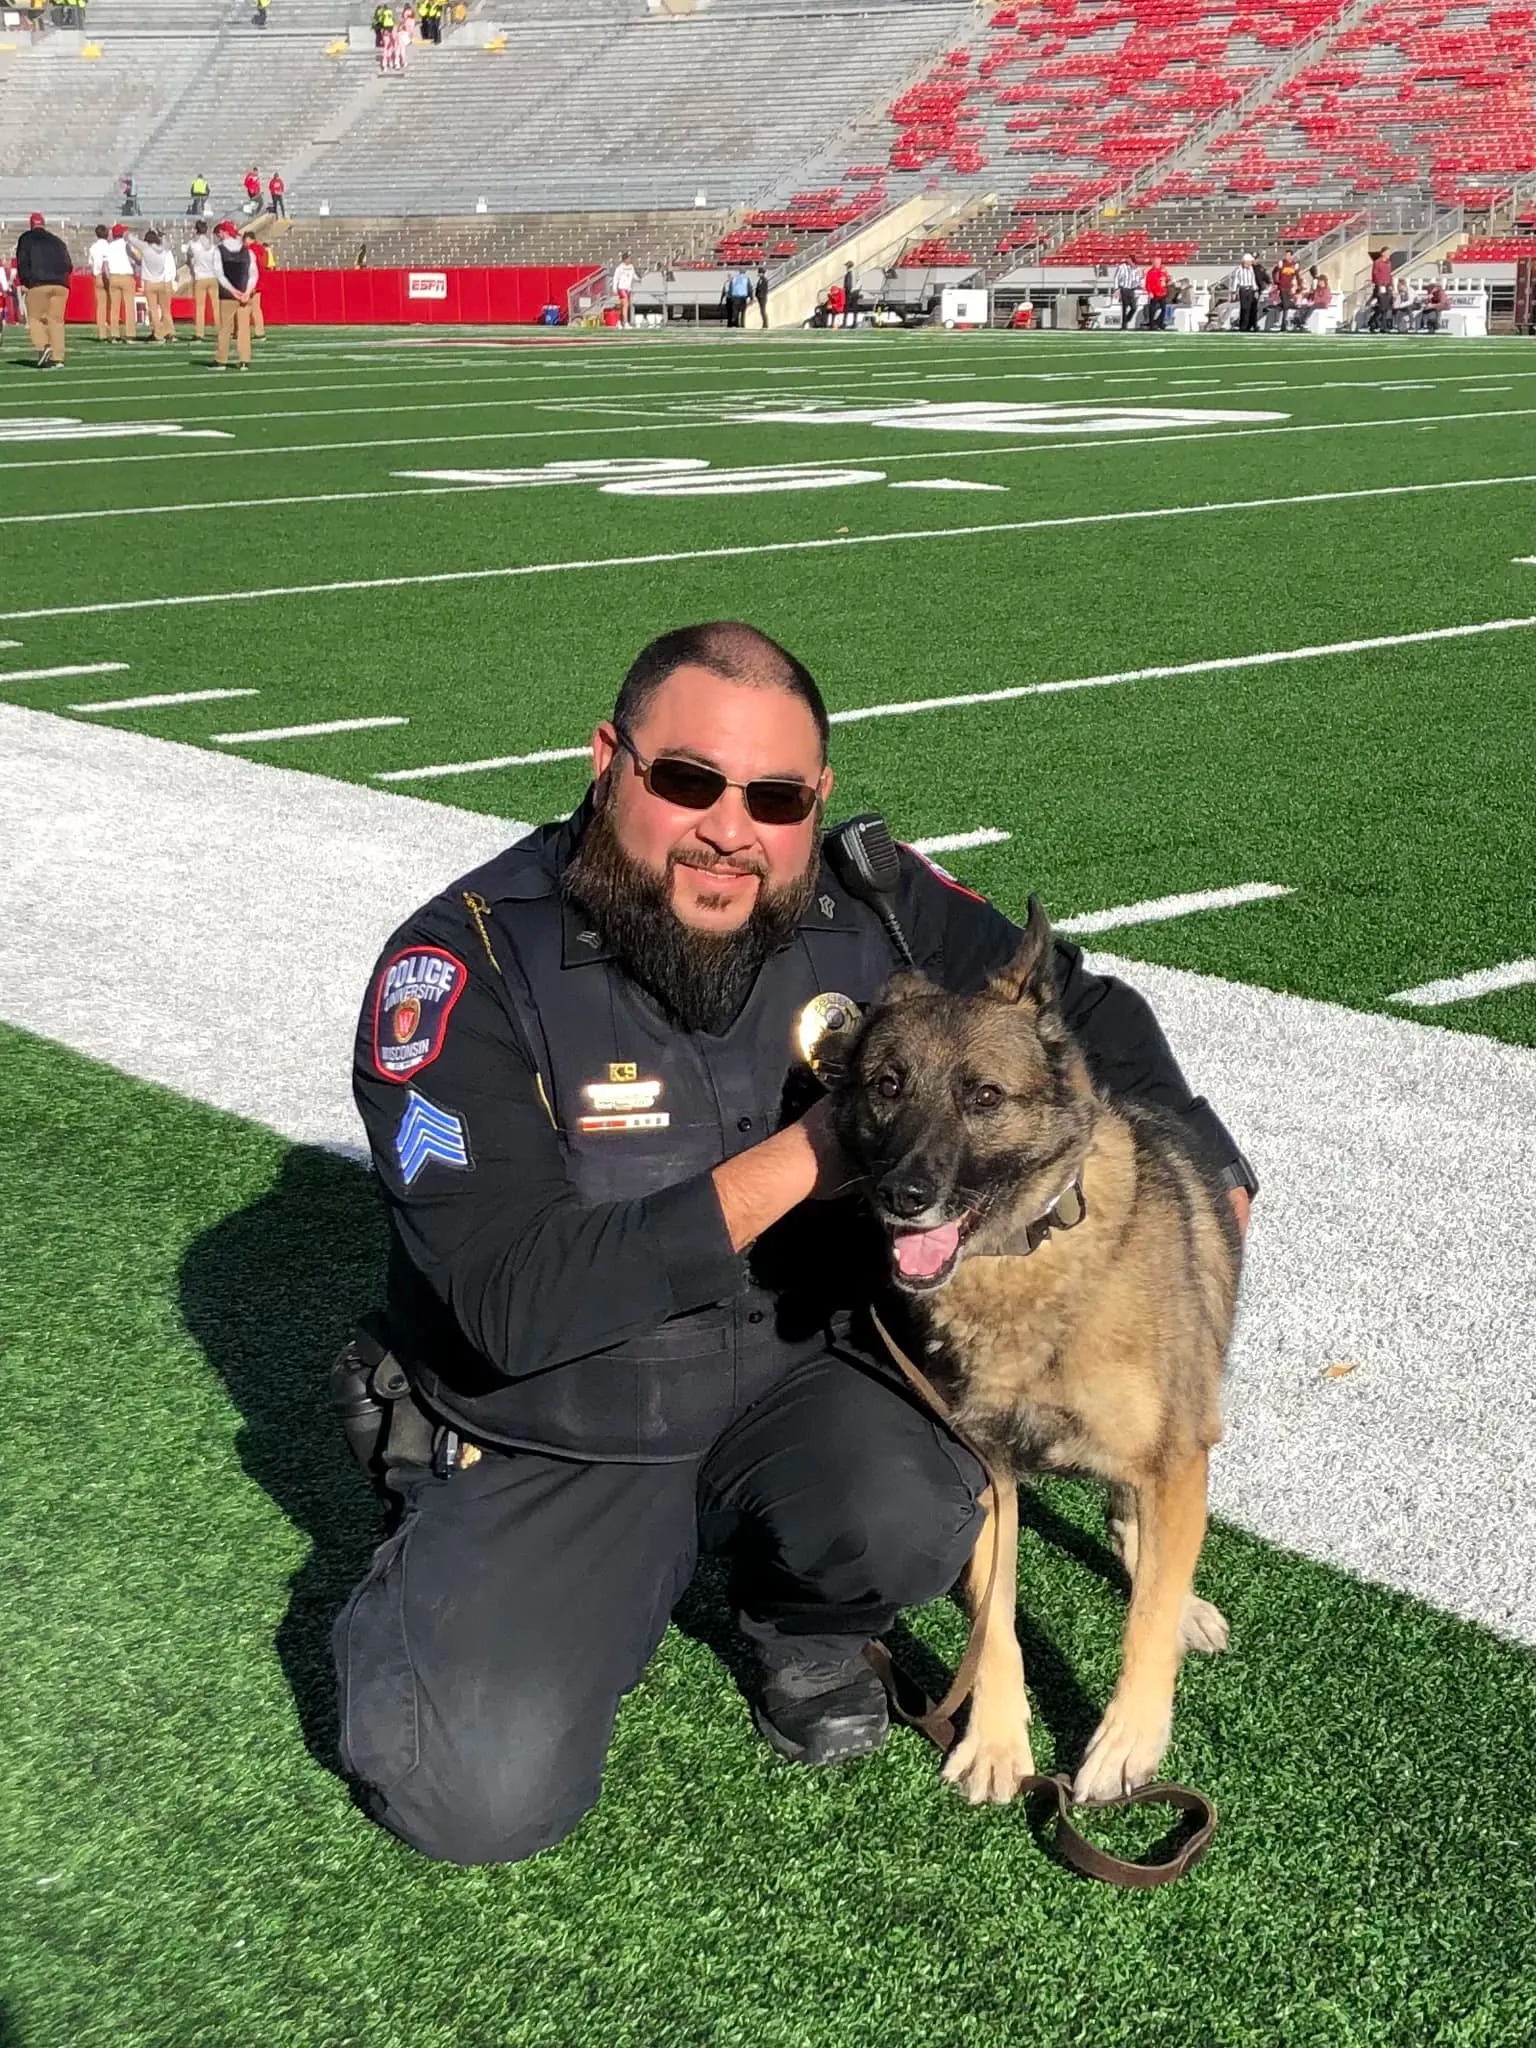 Polizeibeamter und Hund Maya auf einem Fussballplatz